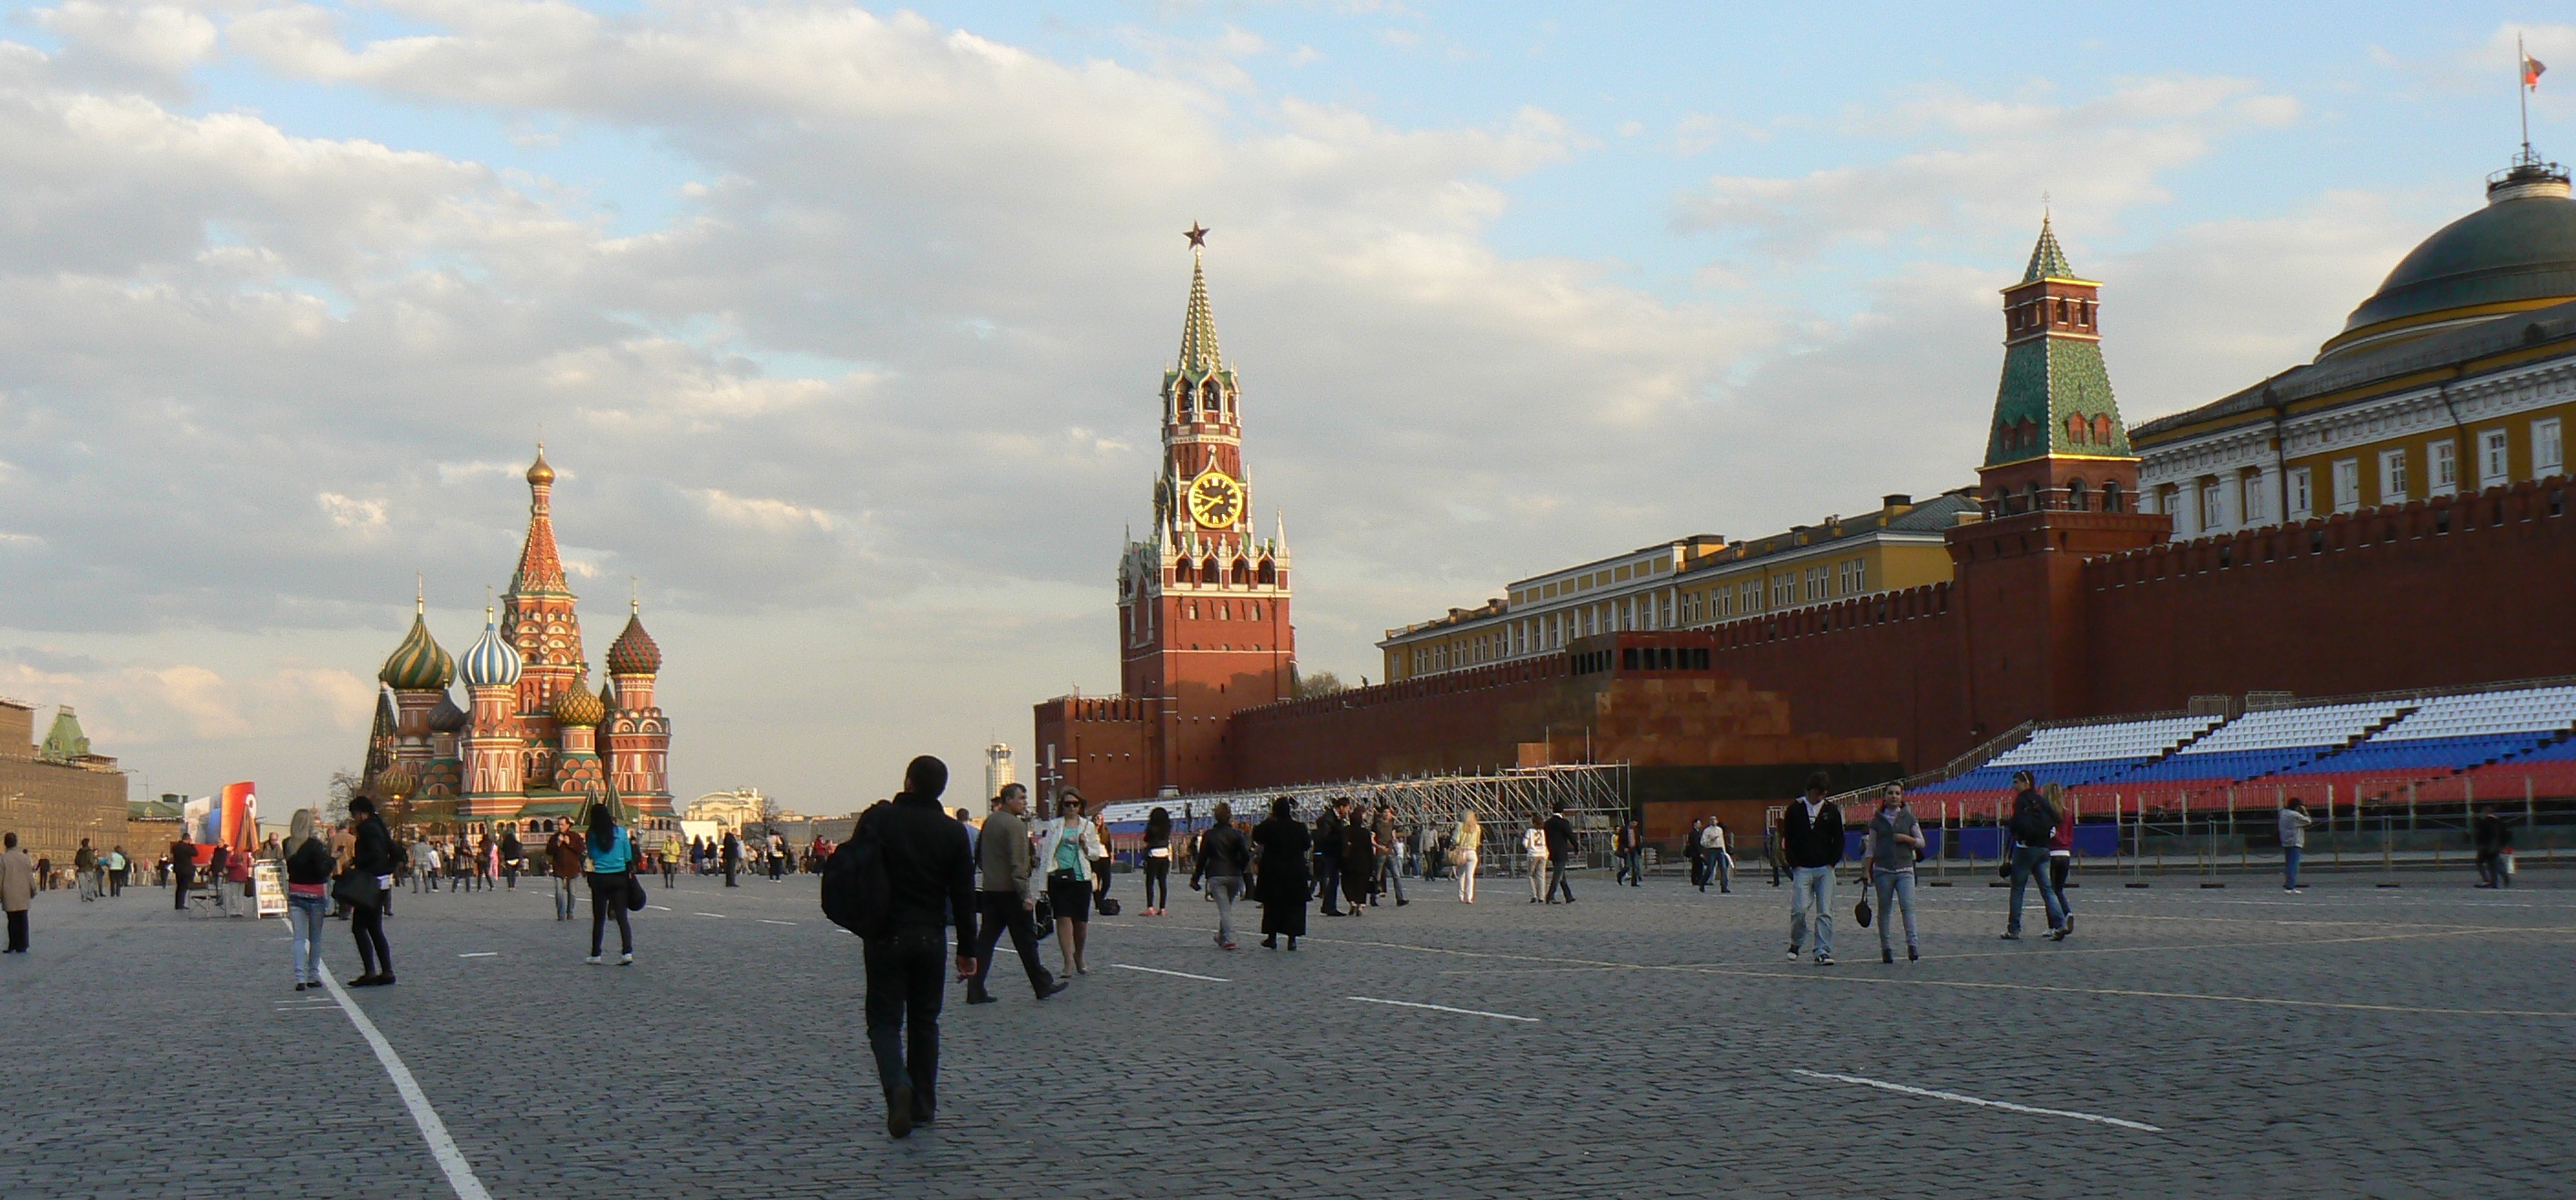 Площадь красной площади в Москве кв м